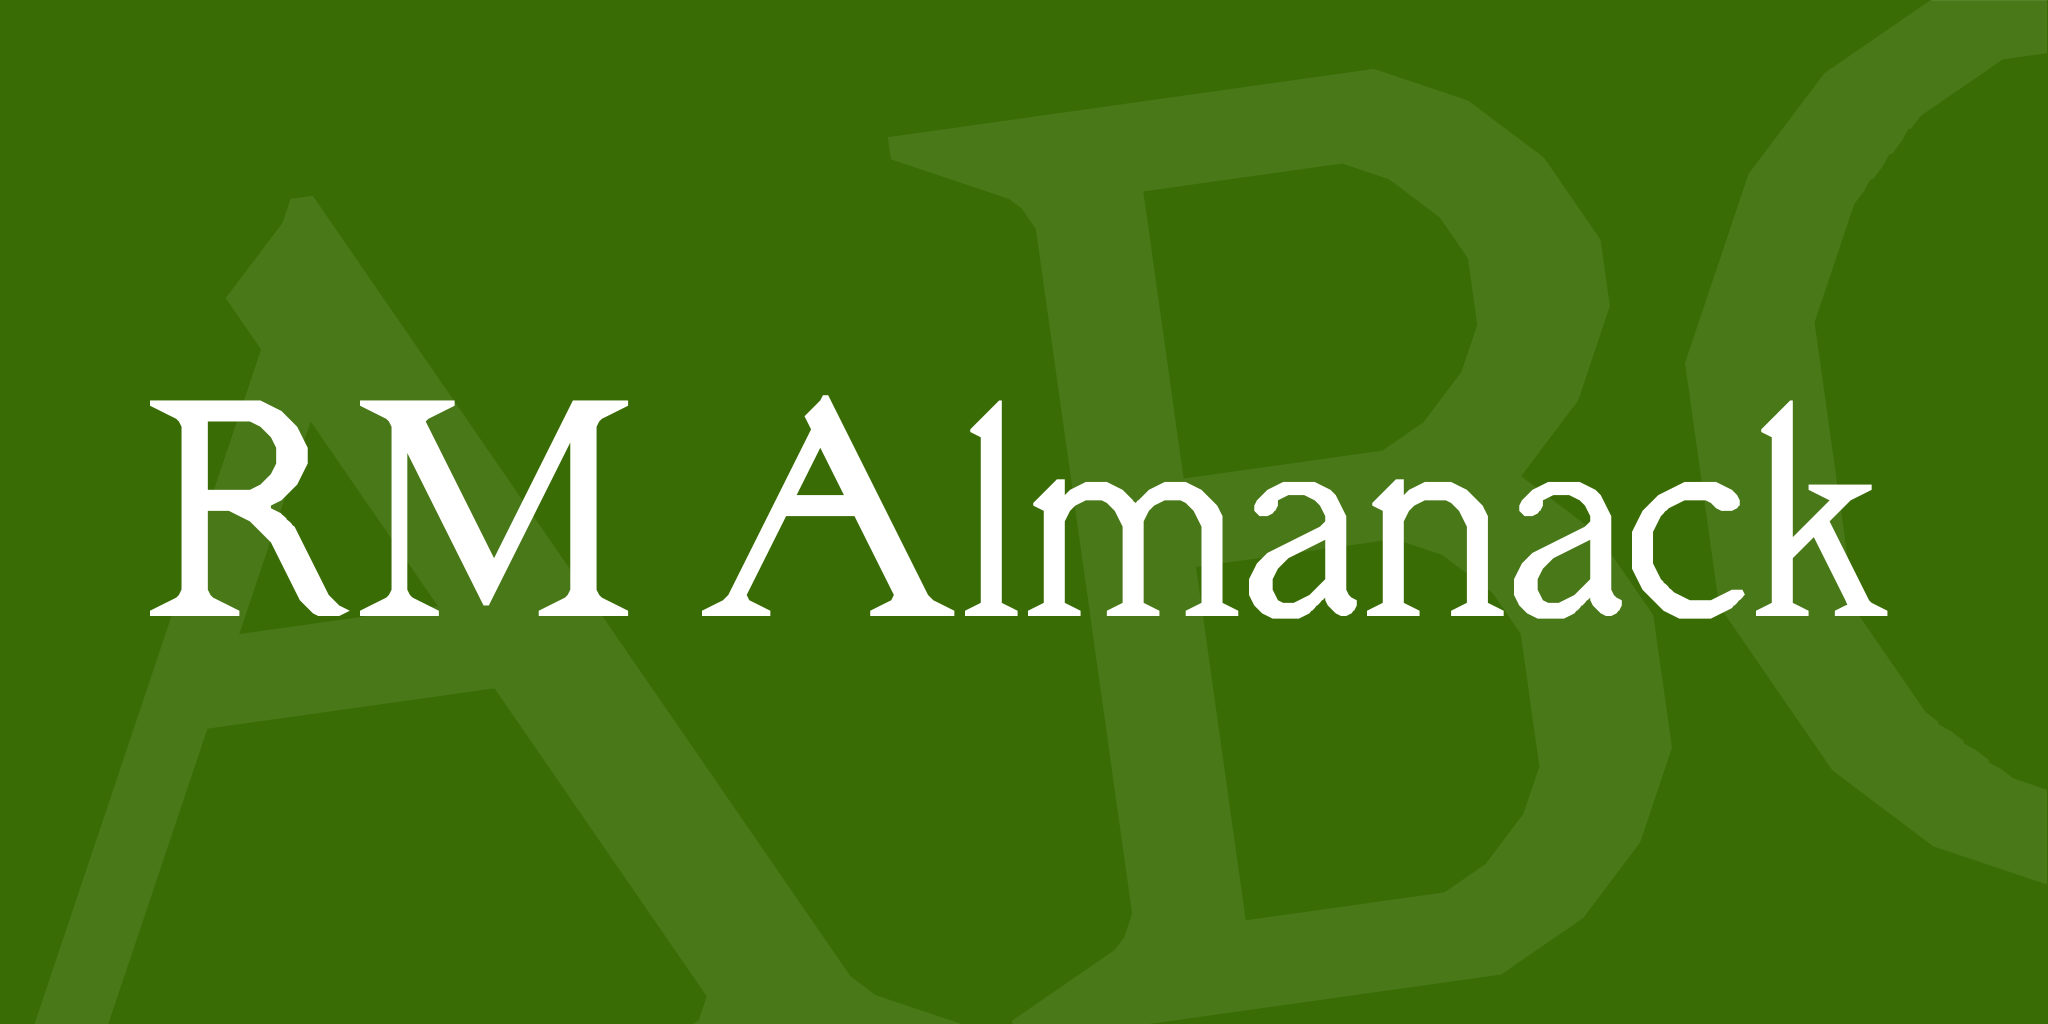 Rm Almanack